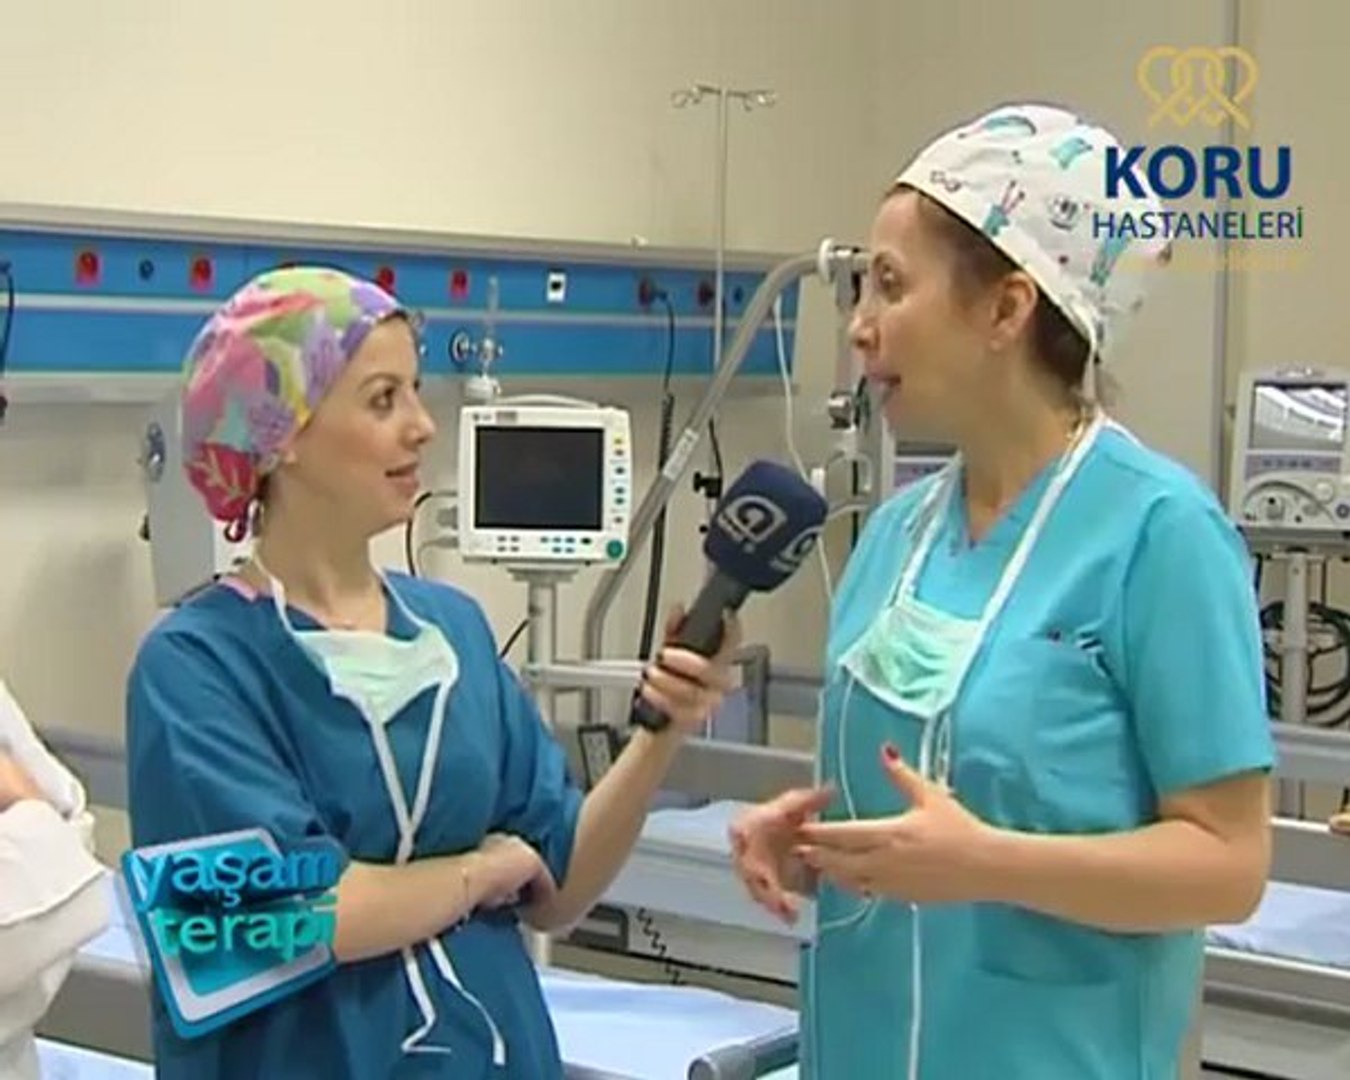 Anestezi nedir nasıl yapılır? - Koru Hastanesi - Dailymotion Video